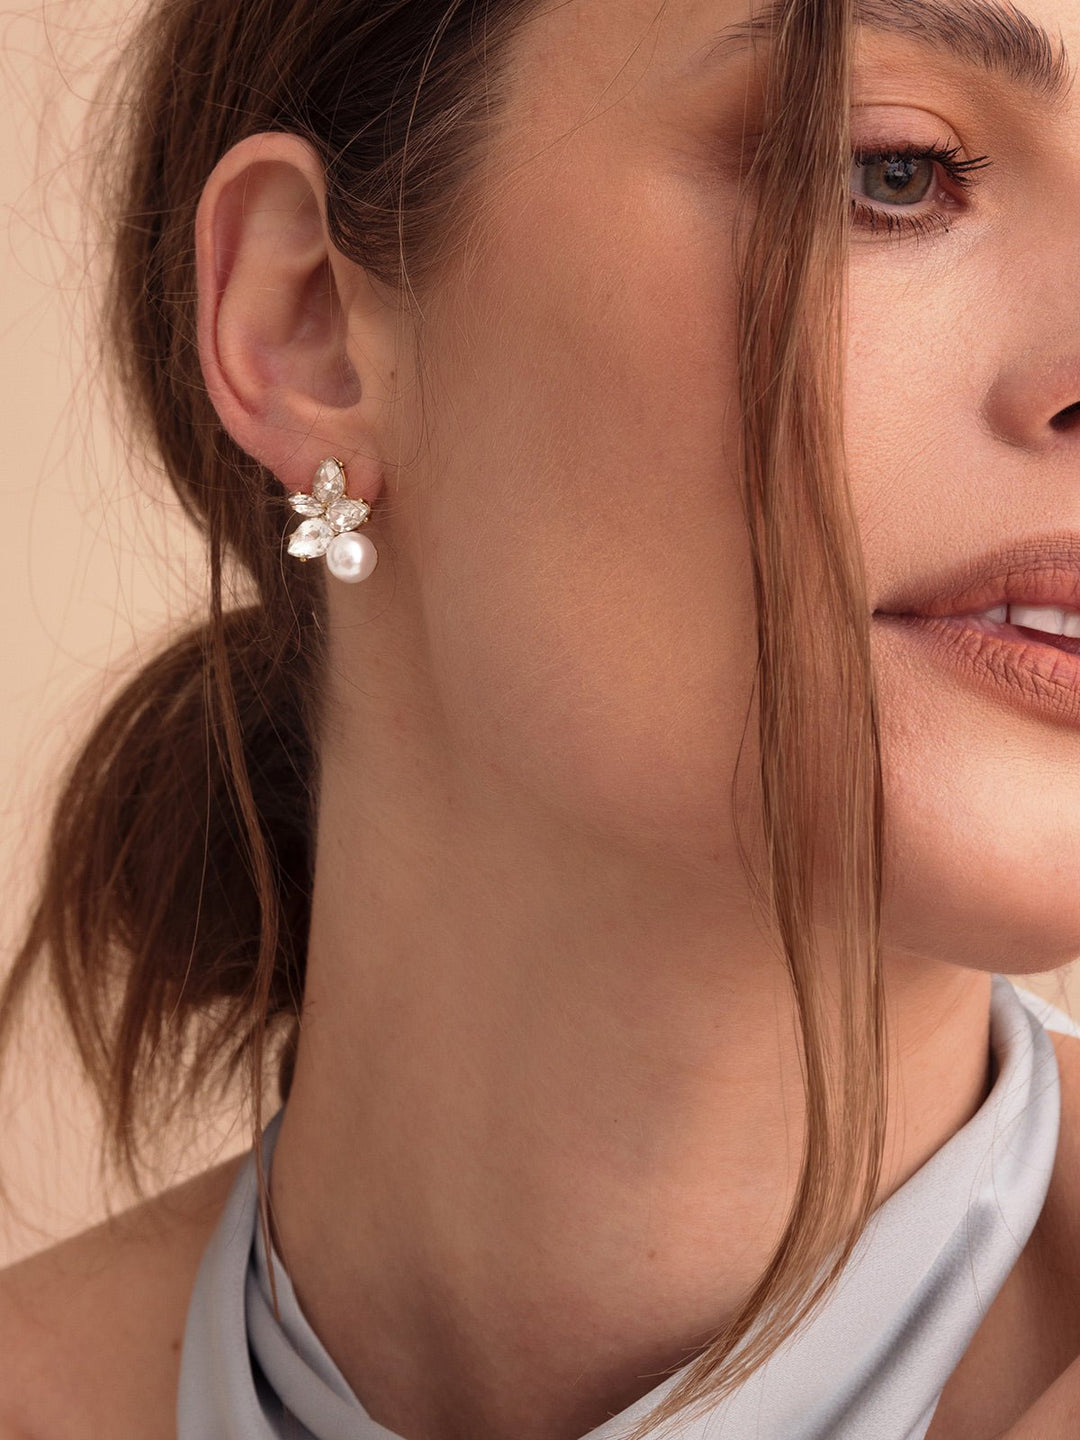 Chanel Gold Star Olive Faux Pearl Ear Cuff Earrings